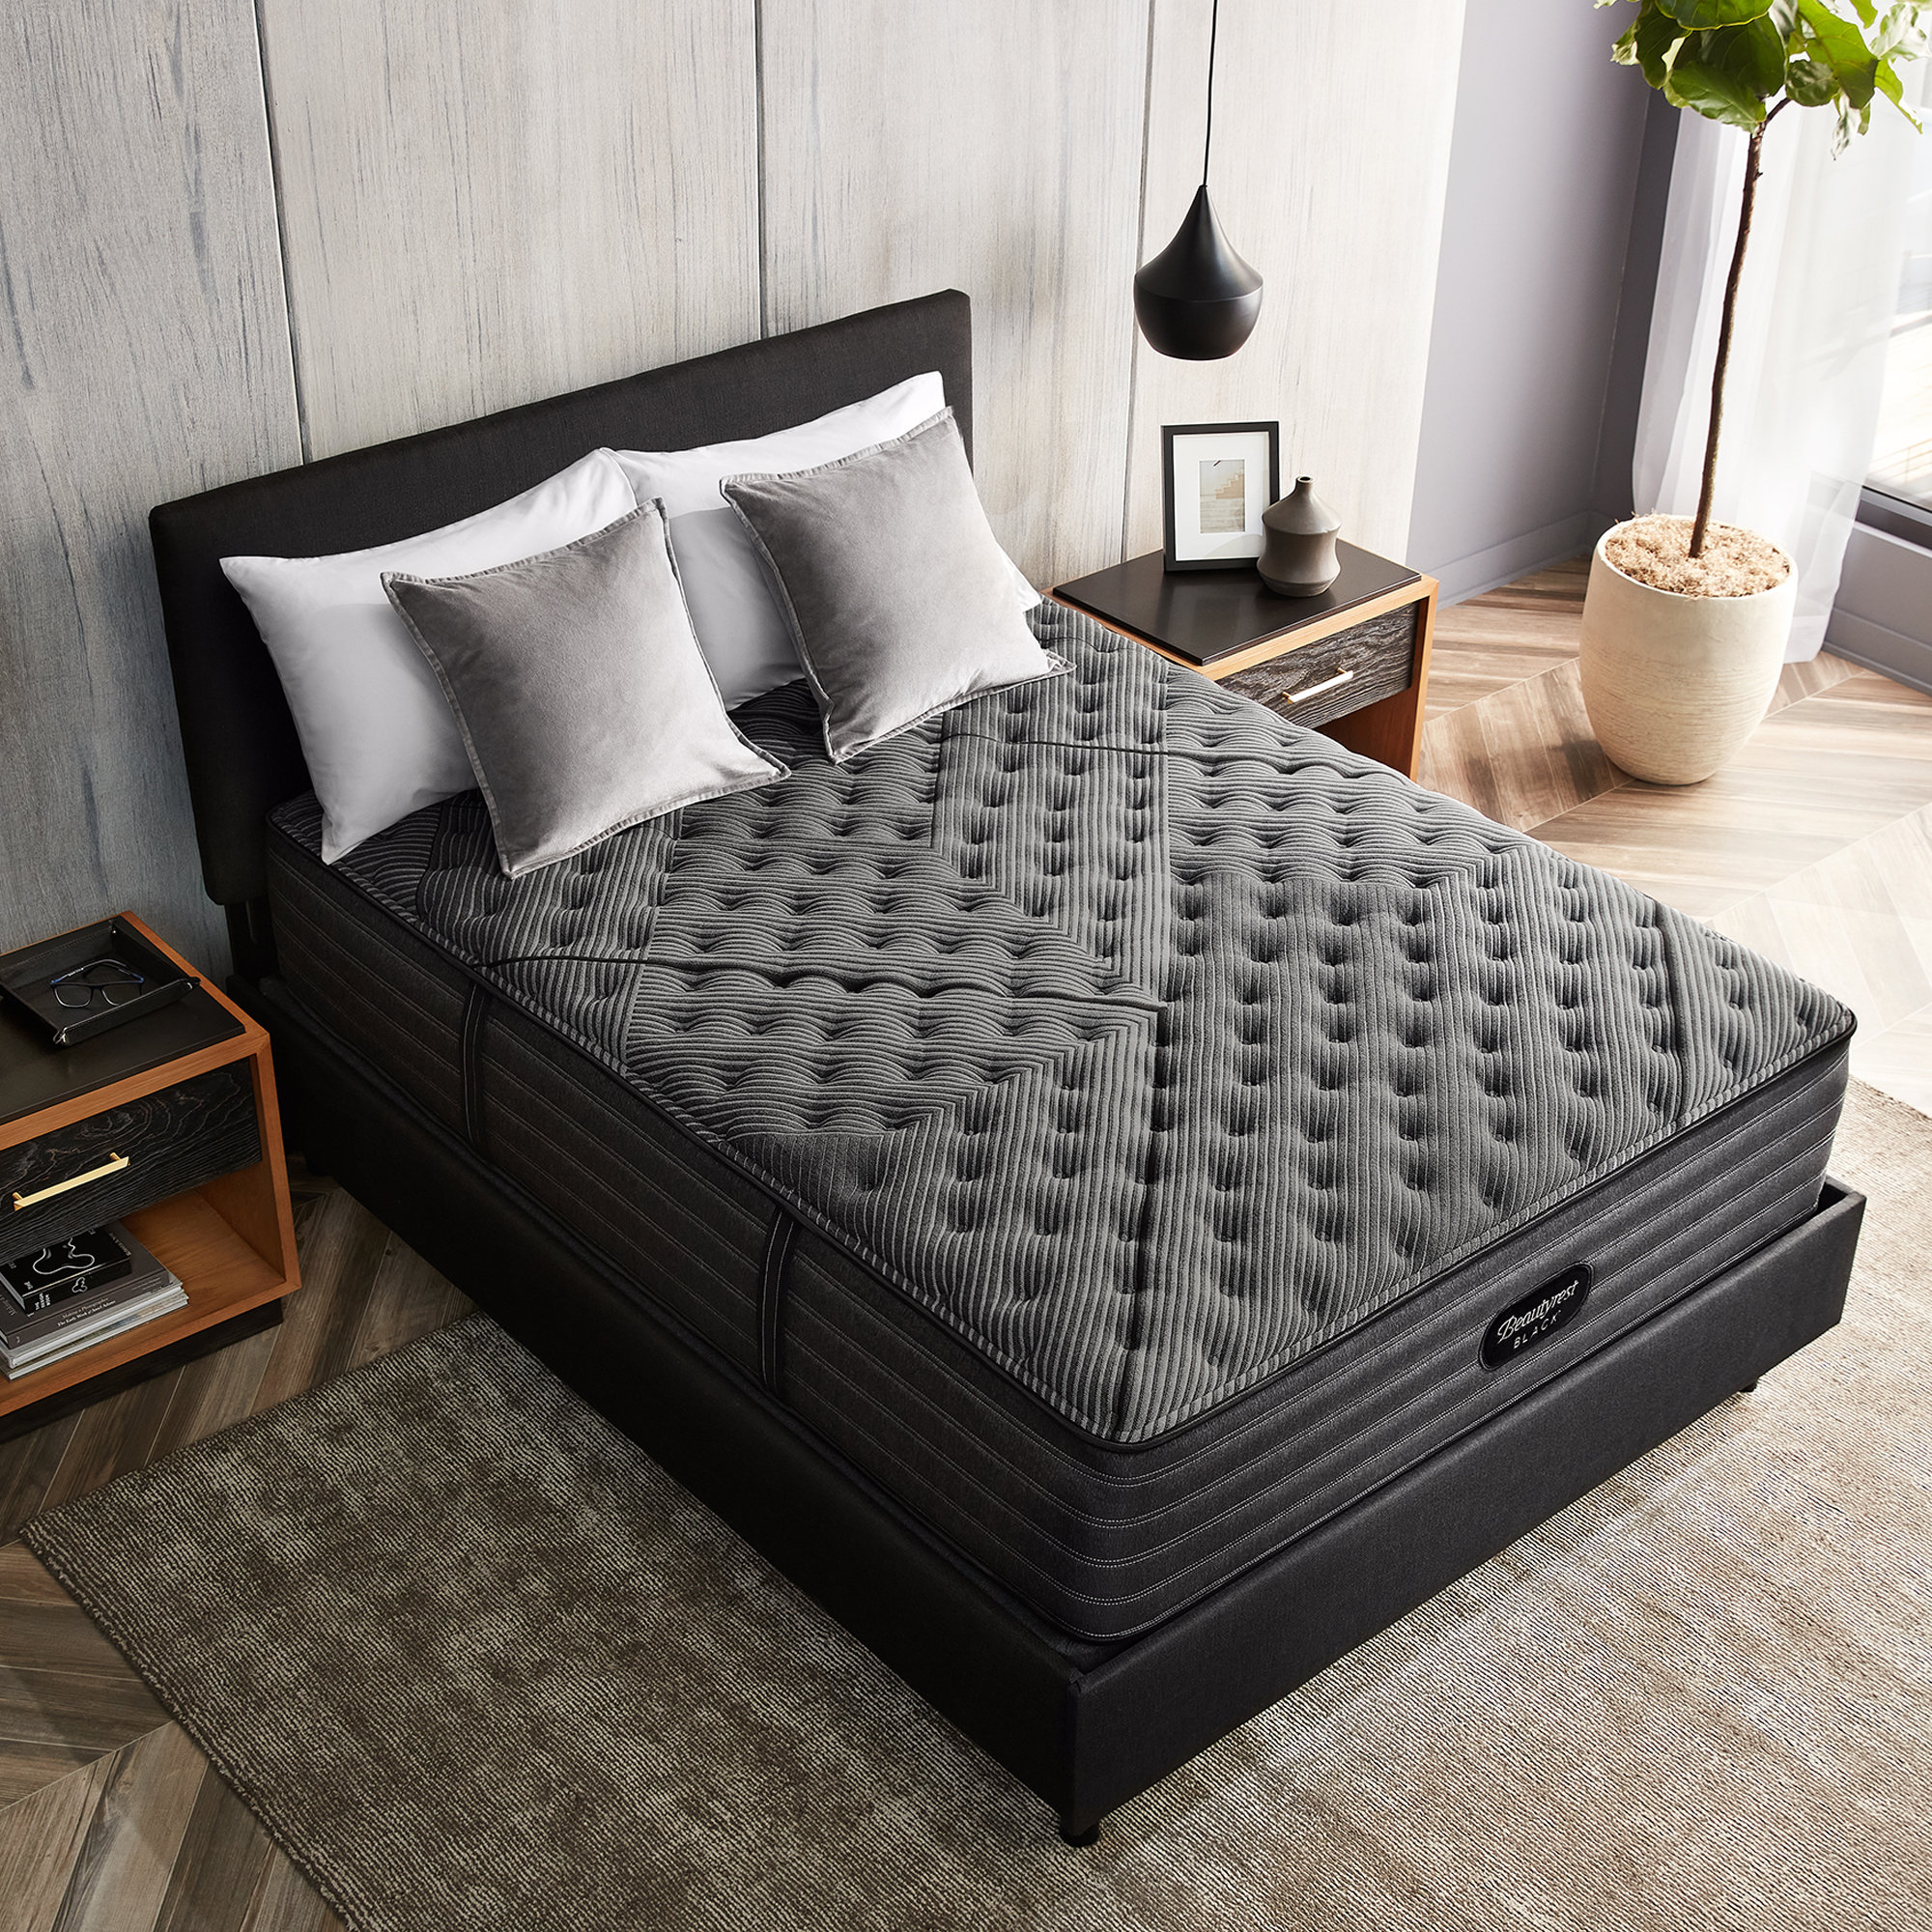 mattress helper sagging mattress solution - size king-2pk 